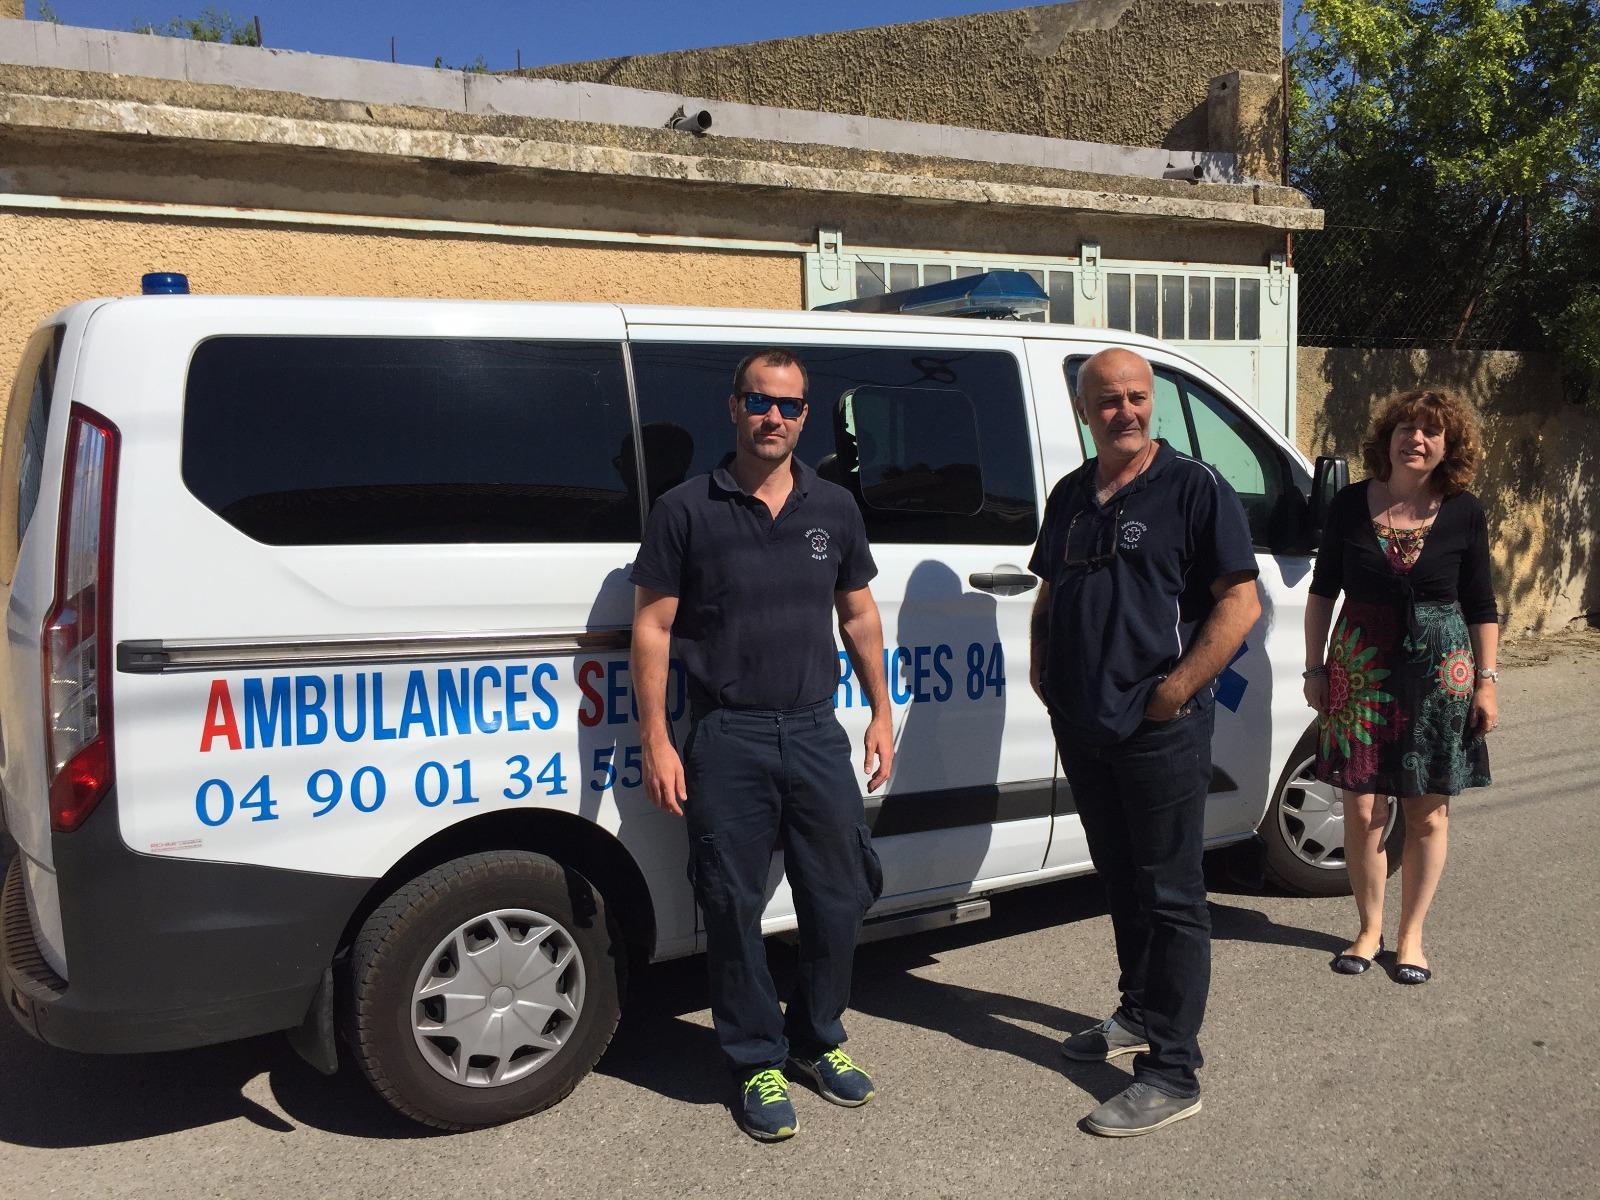 Ambulances Secours Services 84 à Sorgues